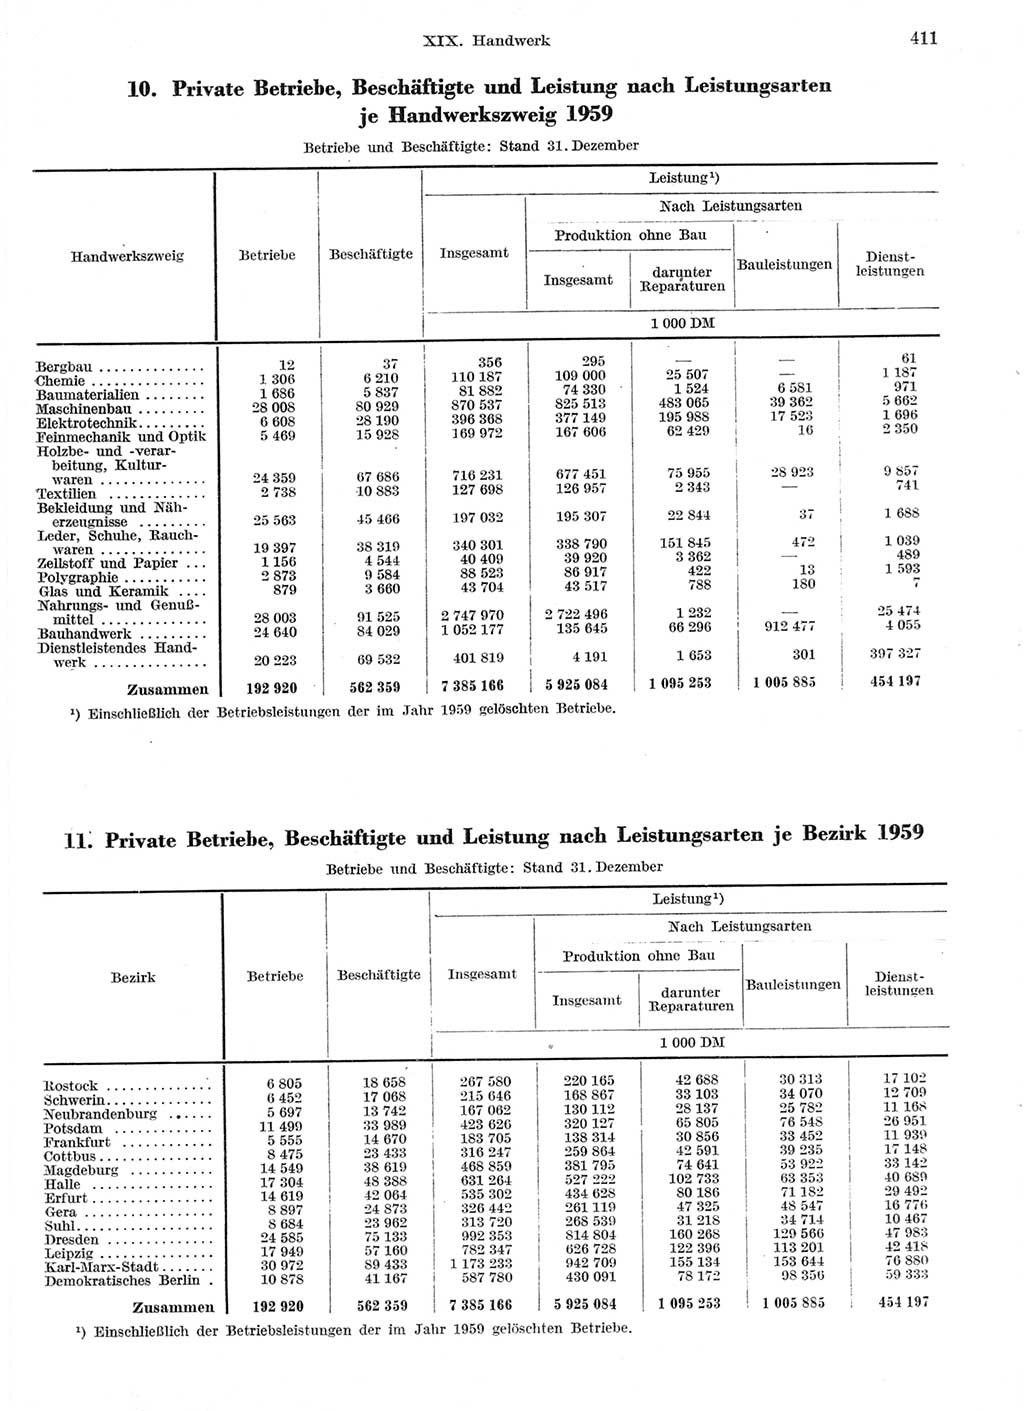 Statistisches Jahrbuch der Deutschen Demokratischen Republik (DDR) 1959, Seite 411 (Stat. Jb. DDR 1959, S. 411)